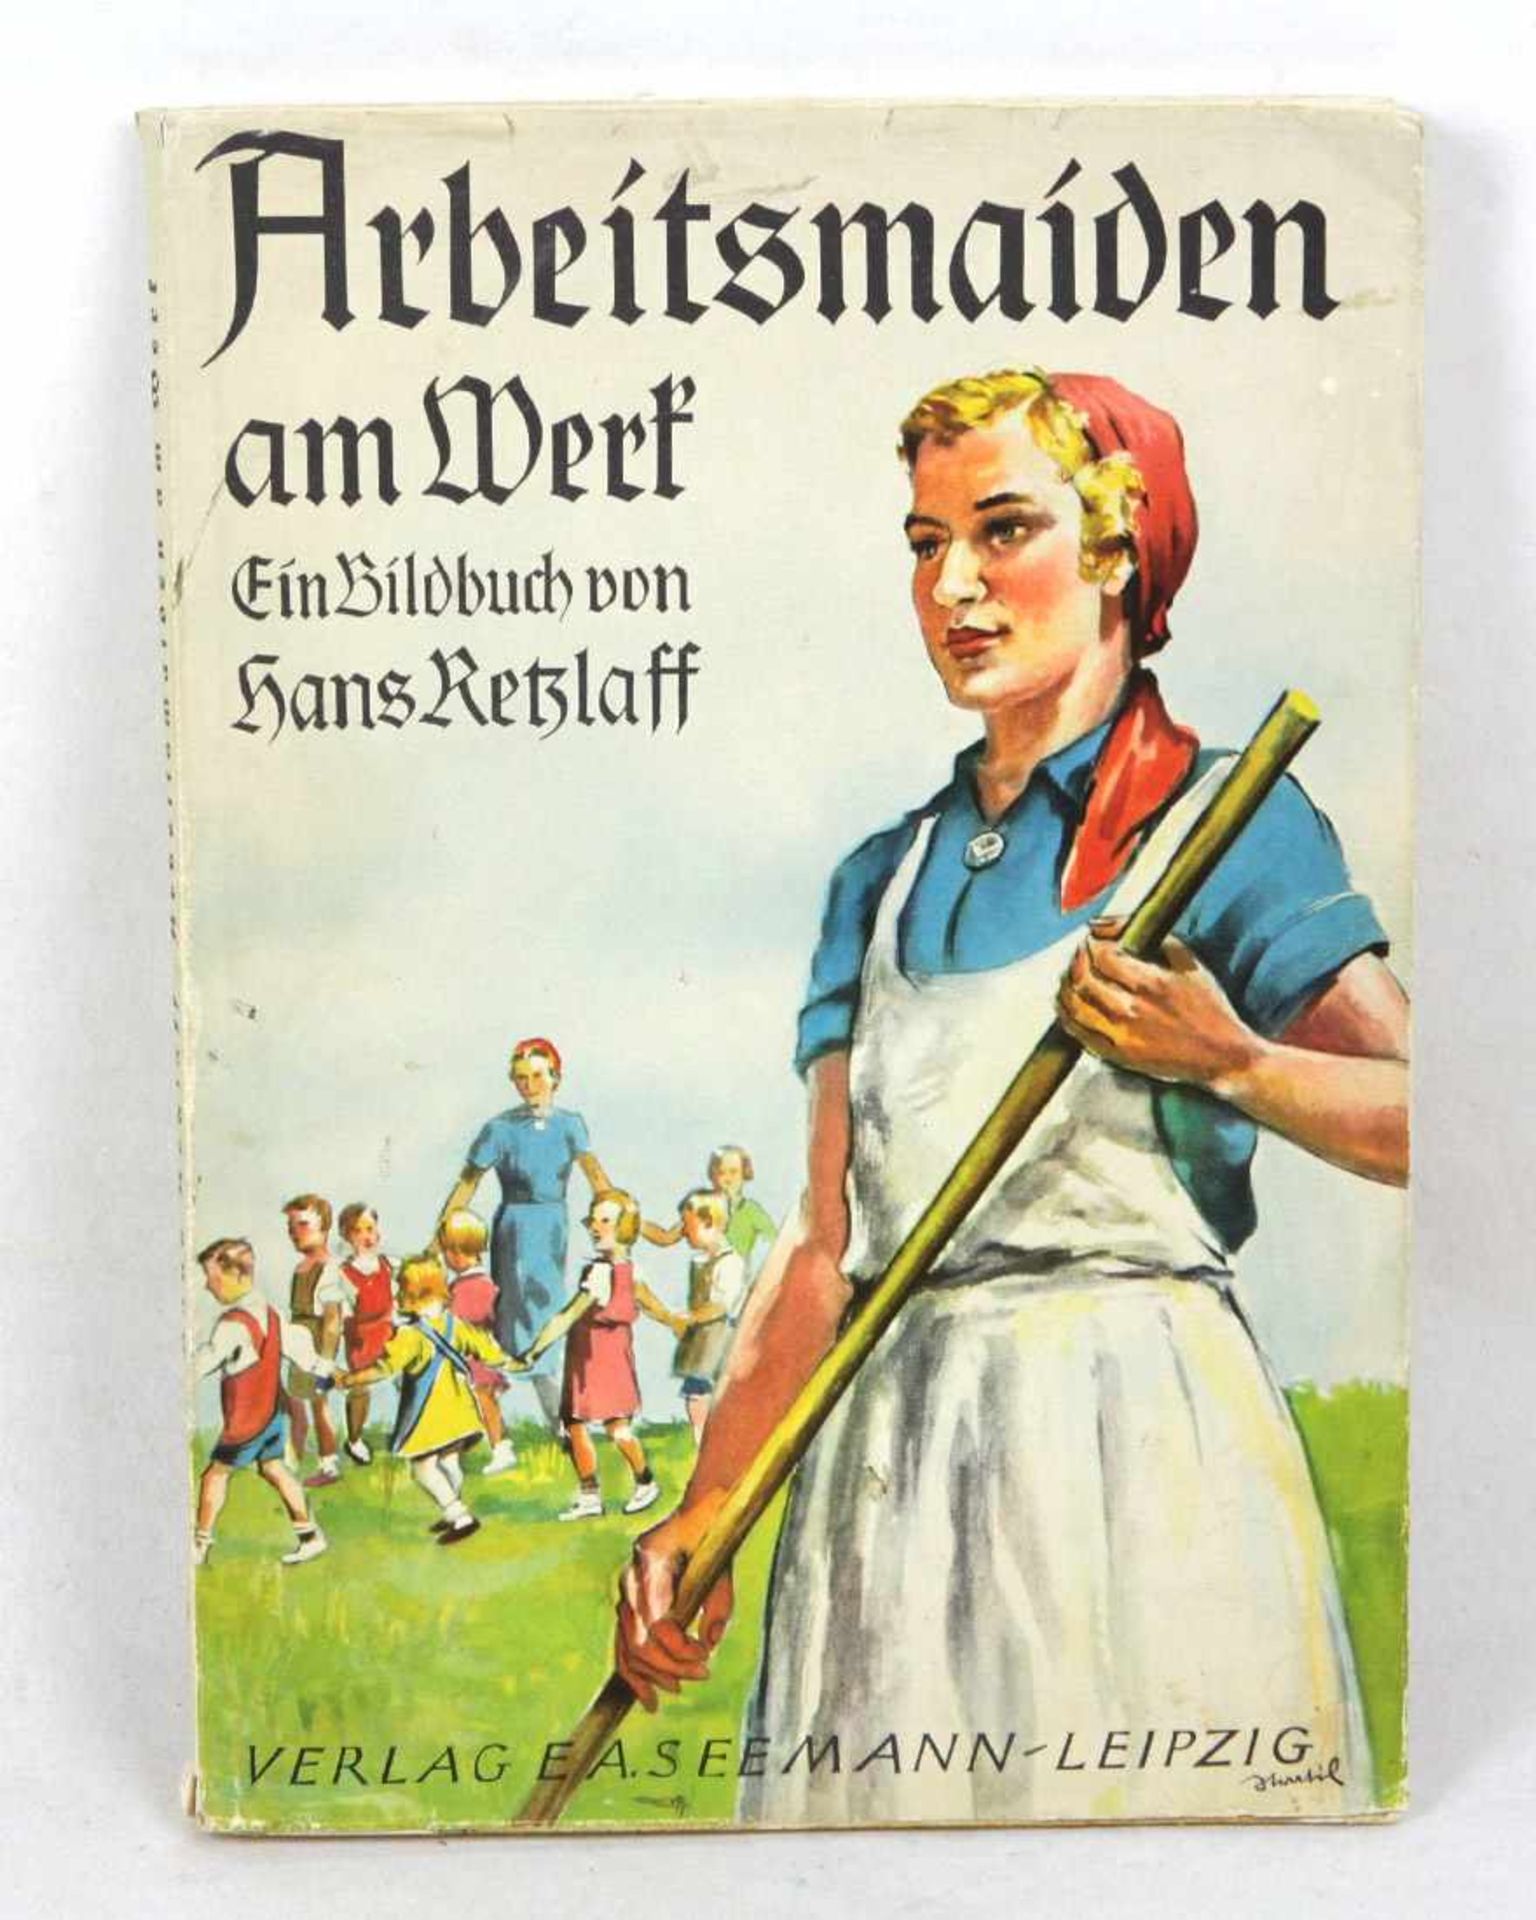 Arbeitsmaiden am Werk Ein Bildbuch von Hans Retzlaff, Geleitwort des Reichsarbeitsführers Konstantin